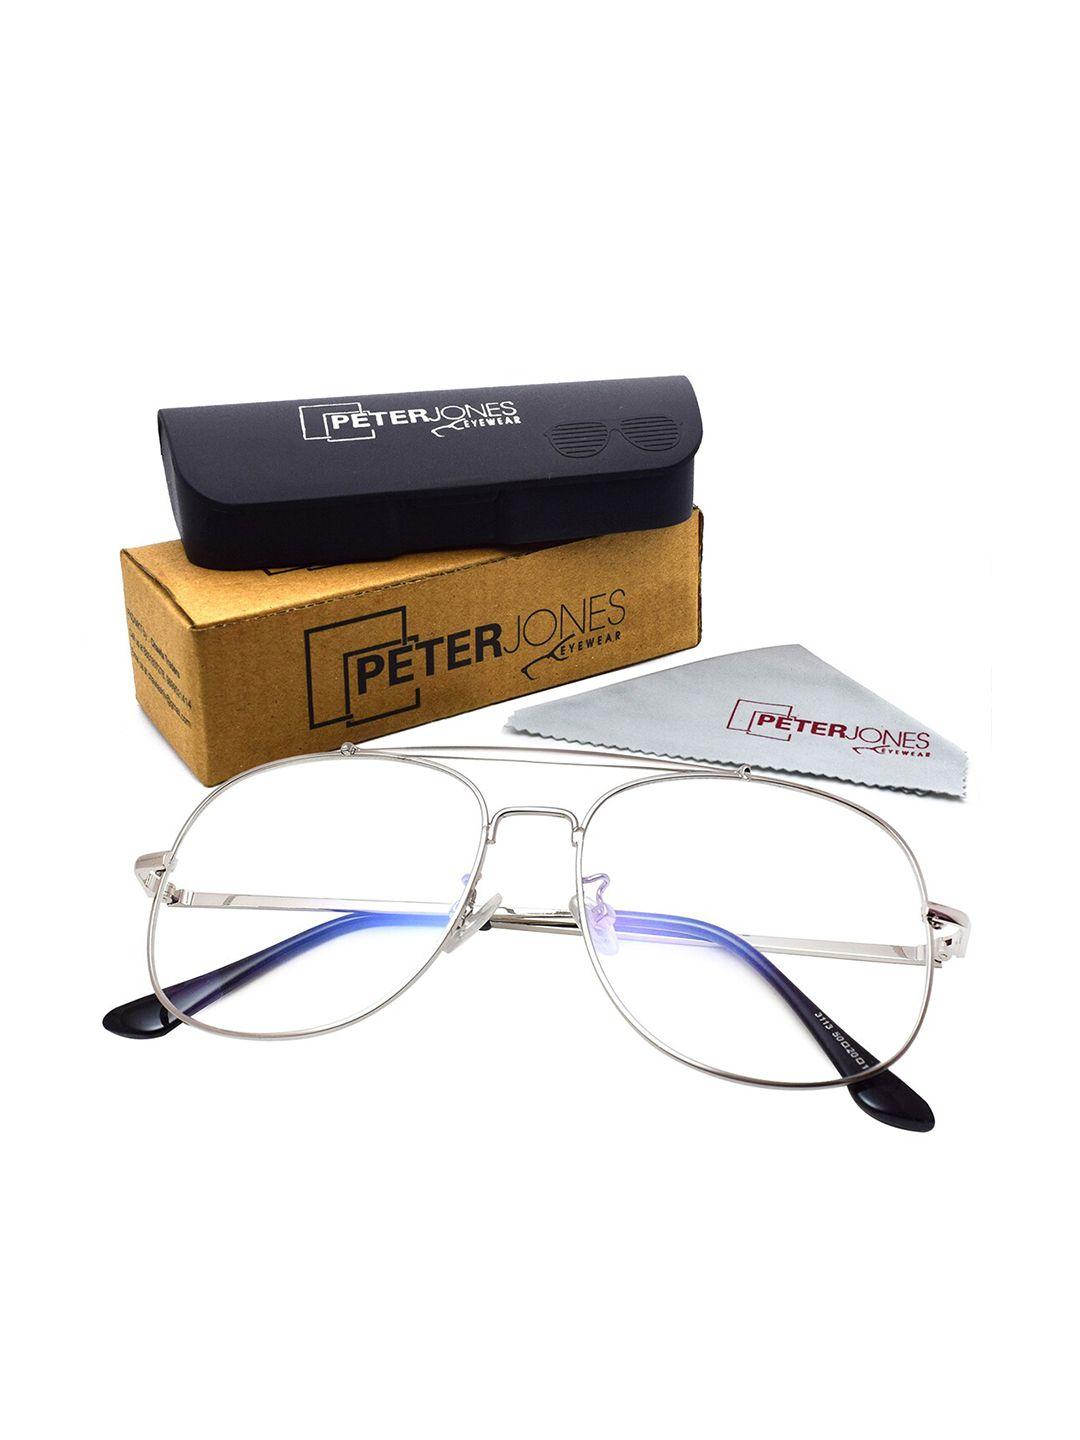 peter jones eyewear unisex full rim square frames with anti glare lenses